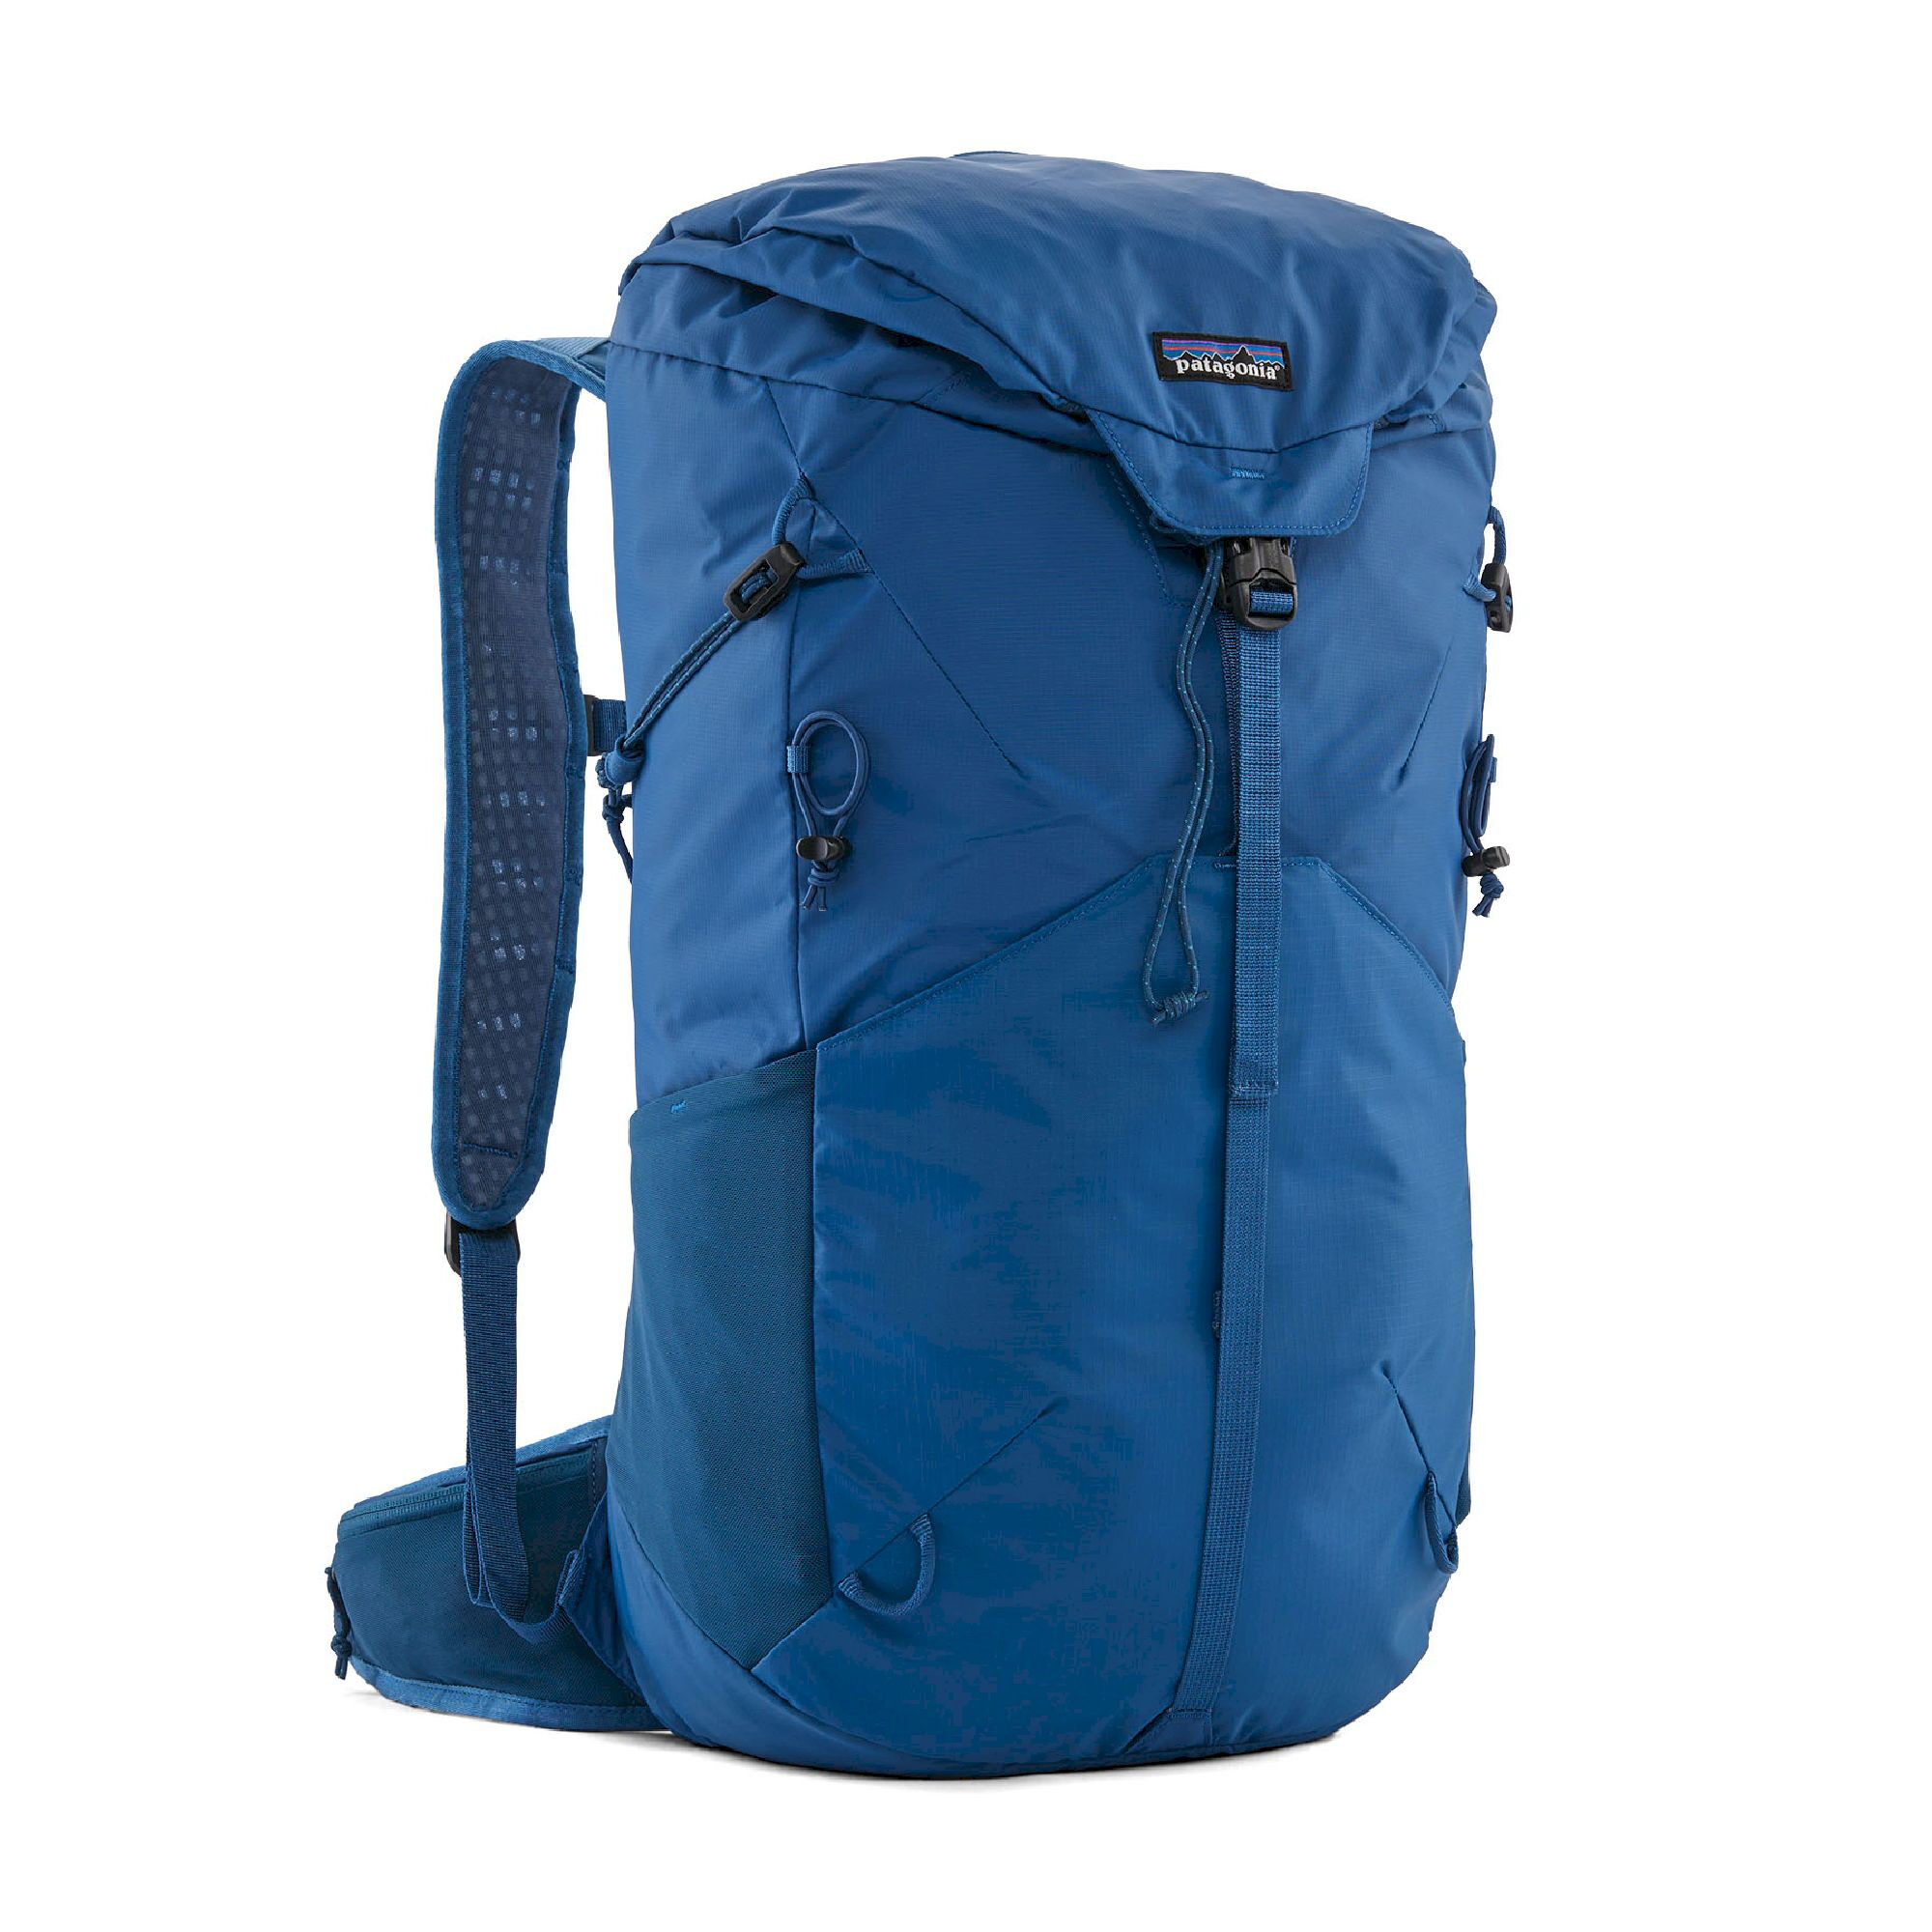 Patagonia Altvia Pack 28L - Walking backpack